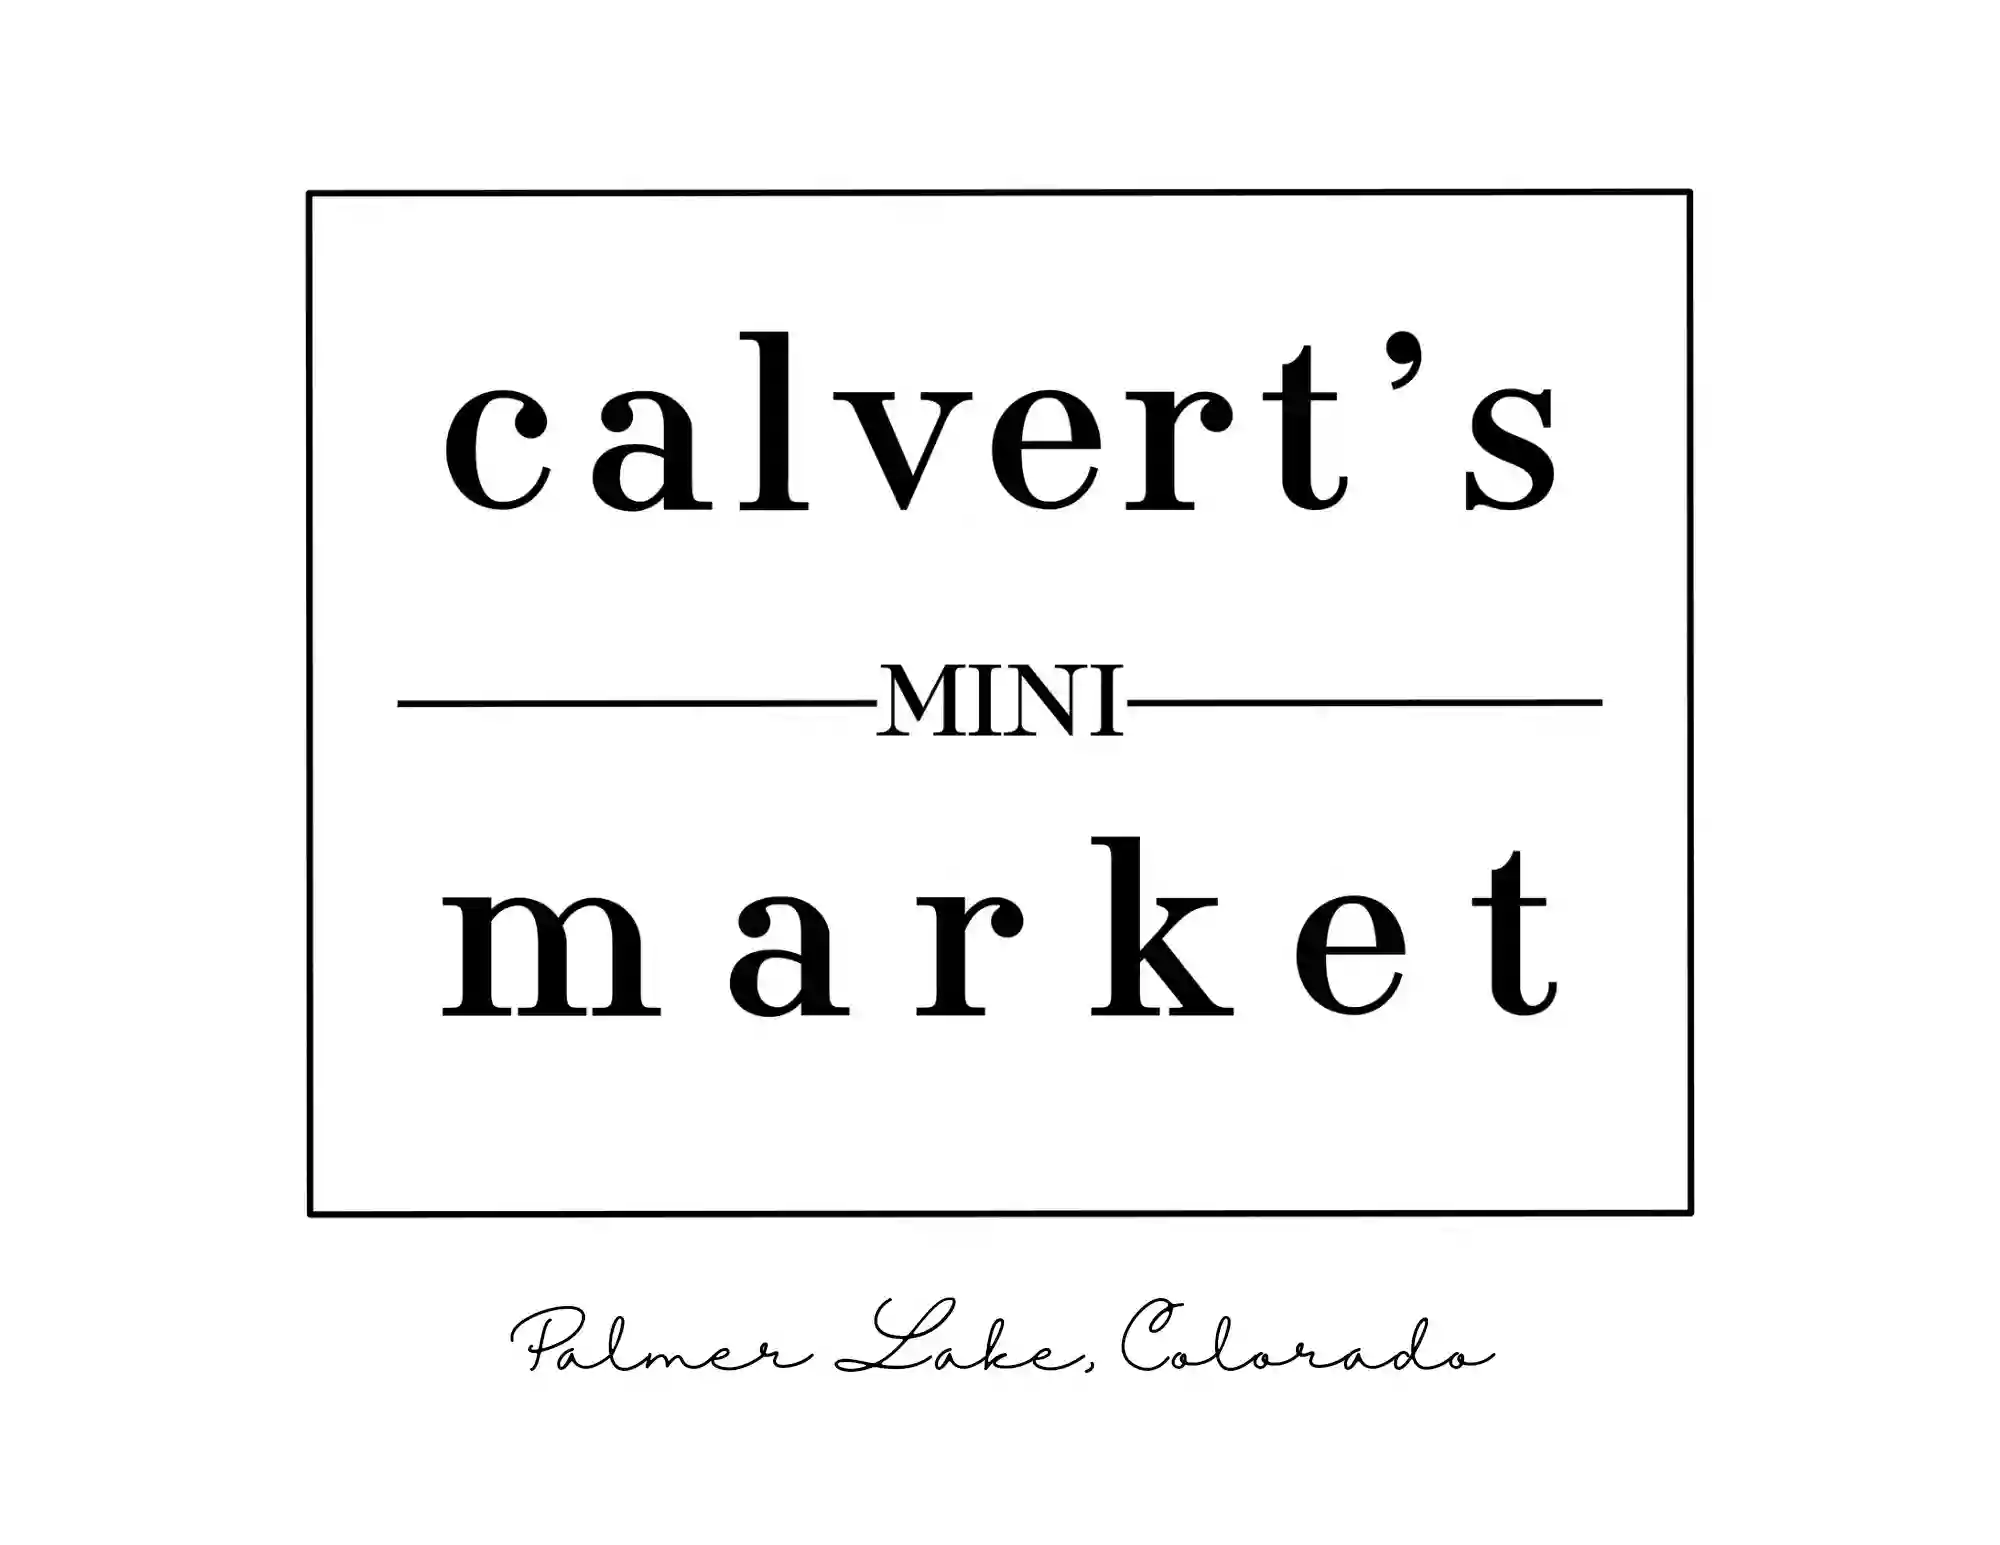 Calvert's Mini Market